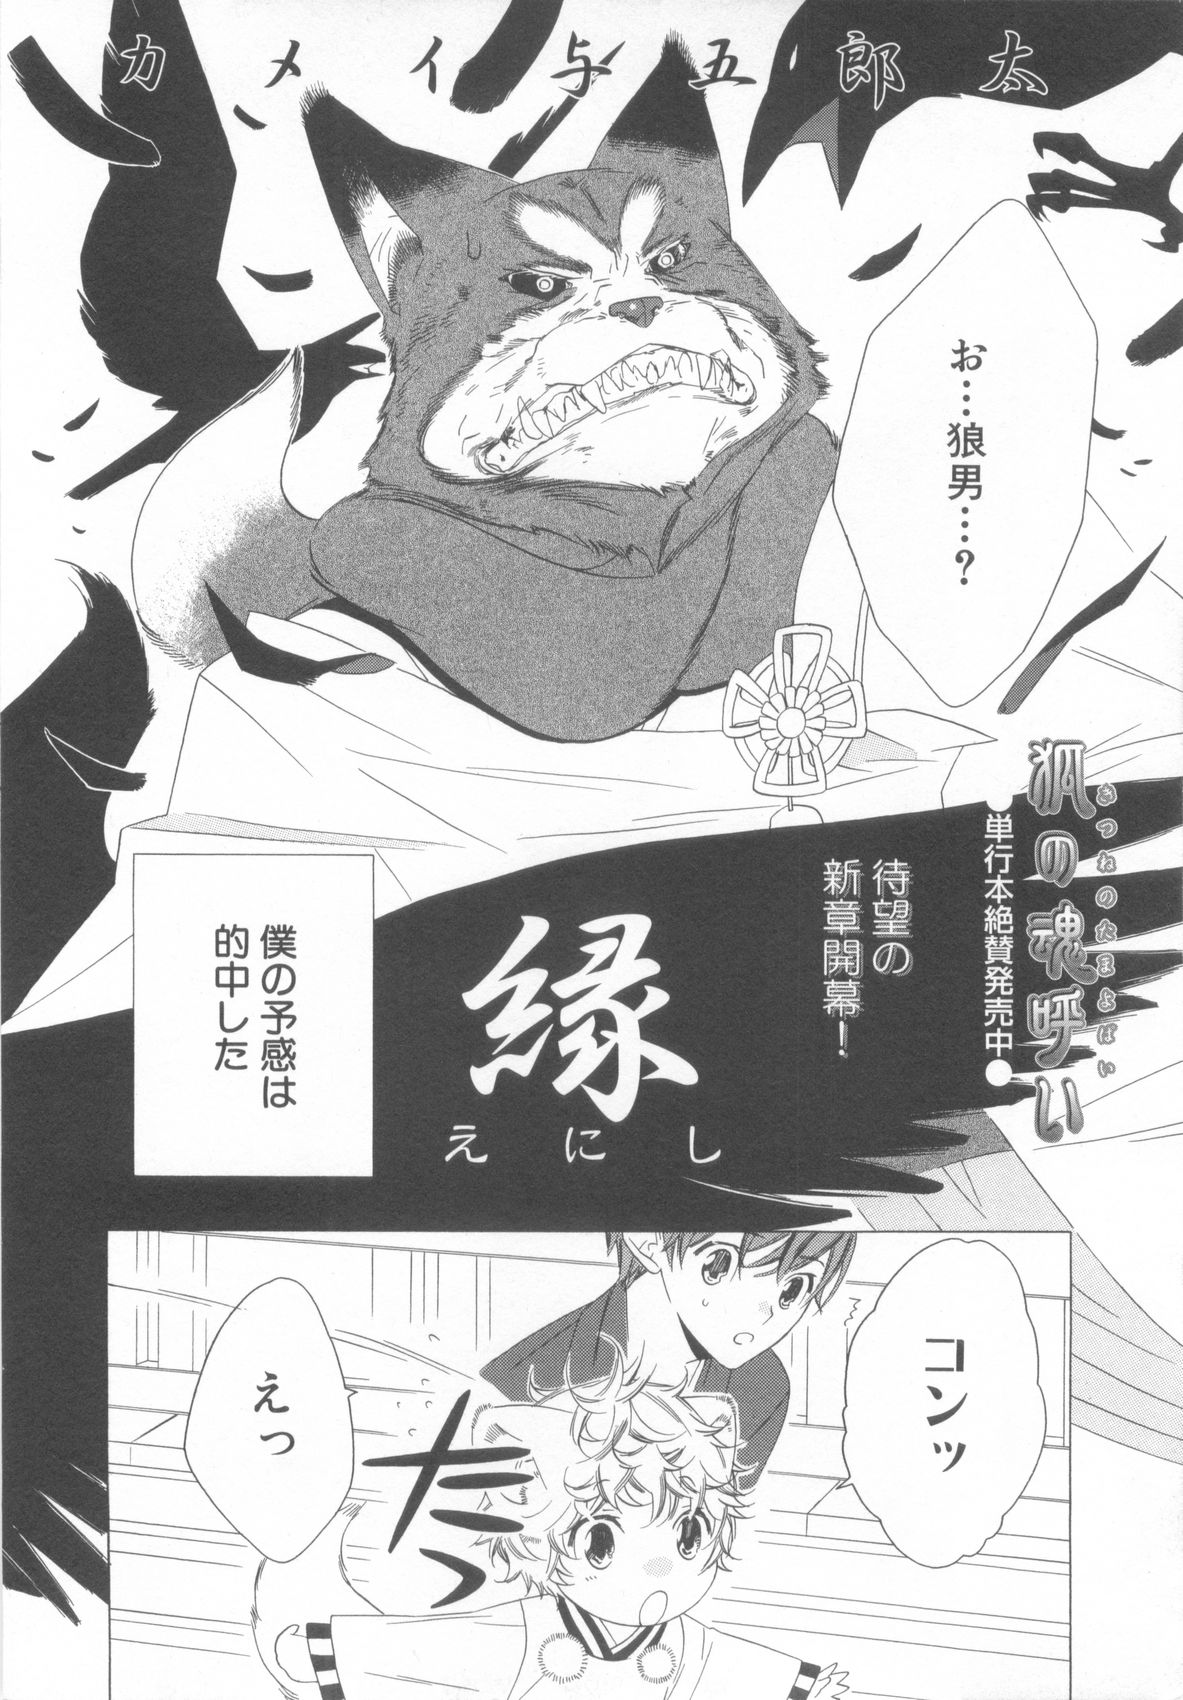 [Anthology] Shota Tama Vol. 3 page 28 full